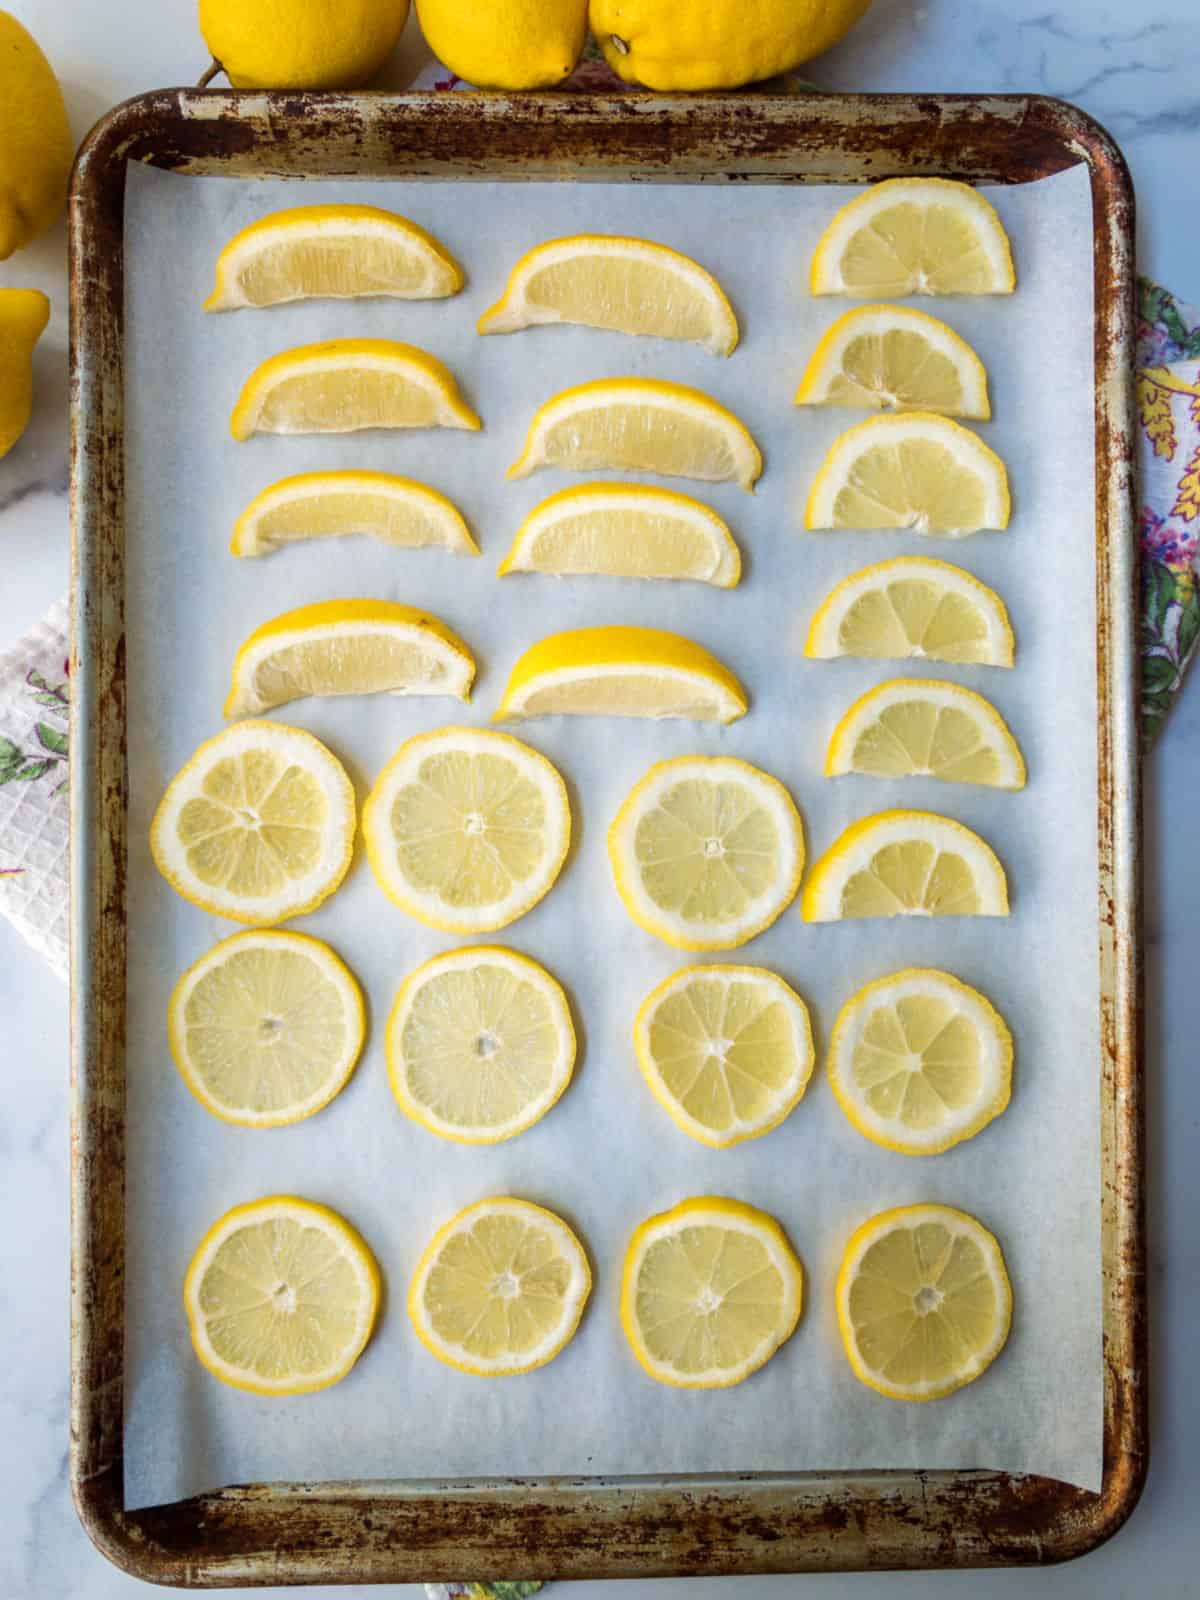 Sliced lemons on a cookie sheet.